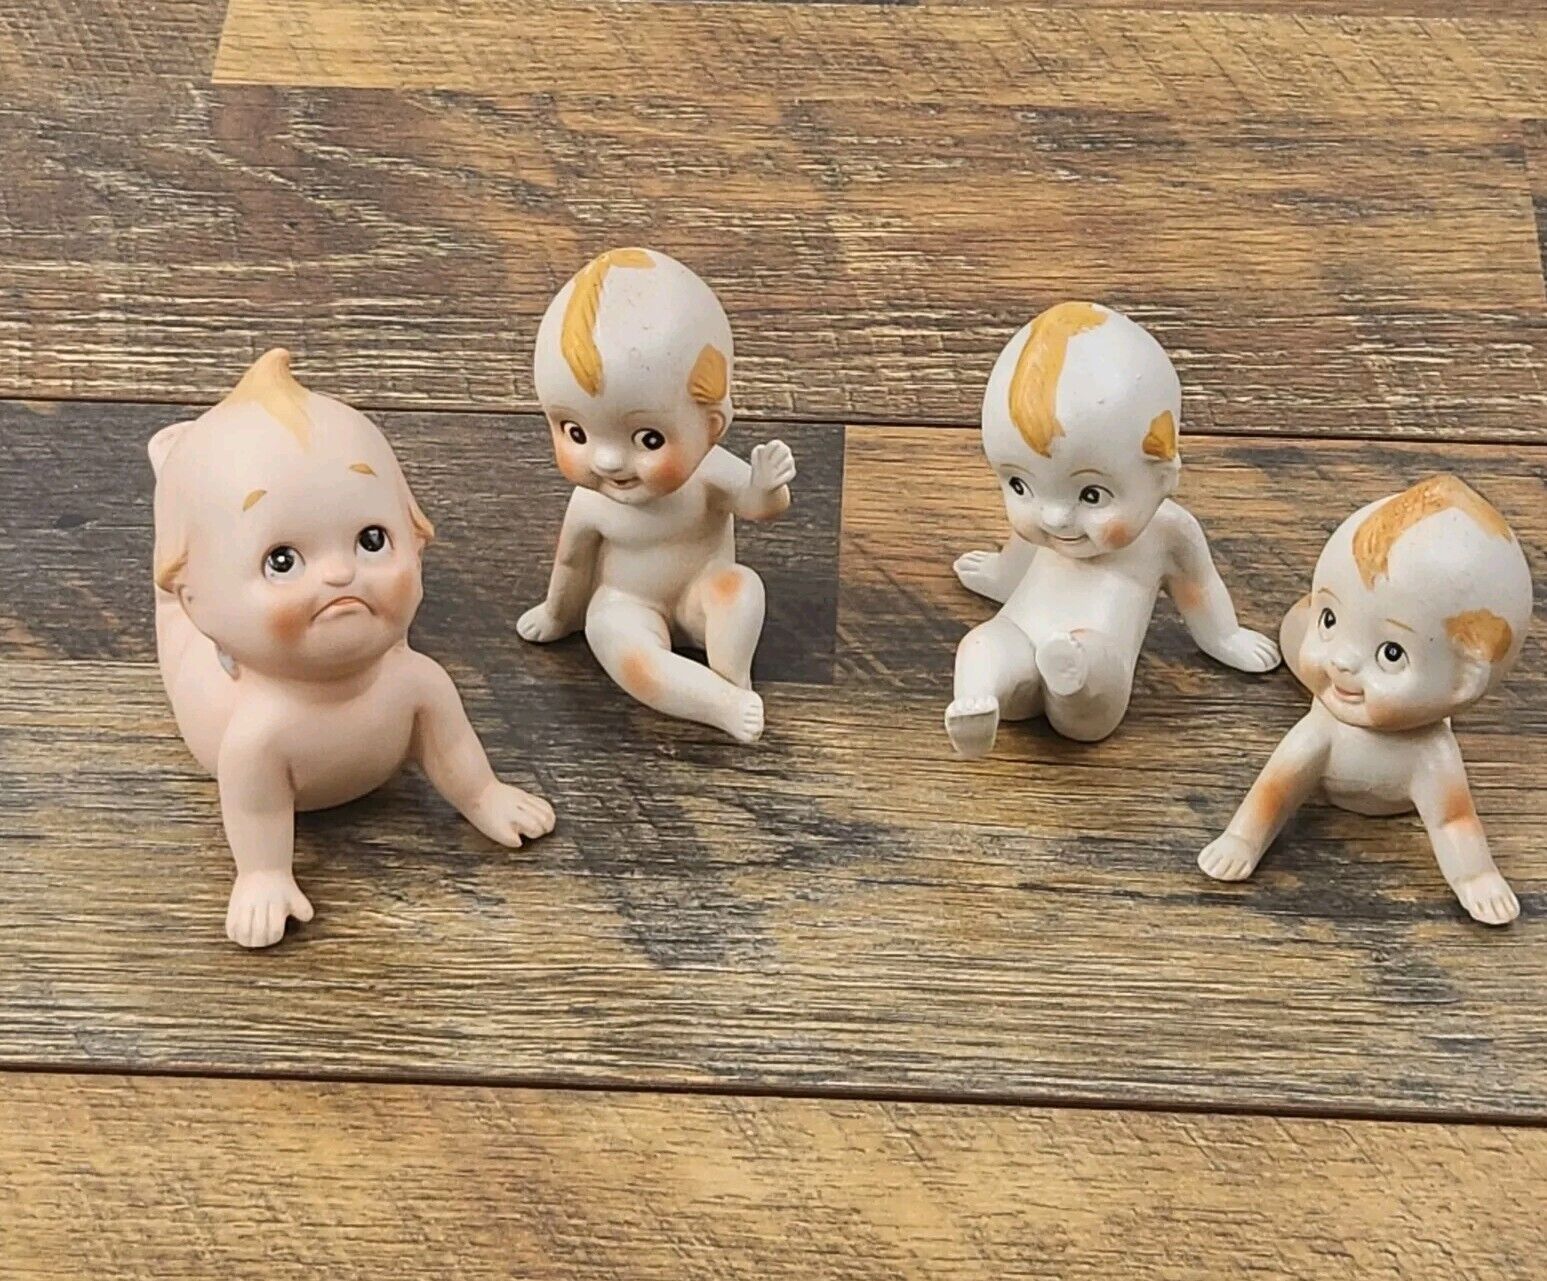 Vintage Kewpie Dolls Baby Porcelain Ceramic Figurines Made In Korea 